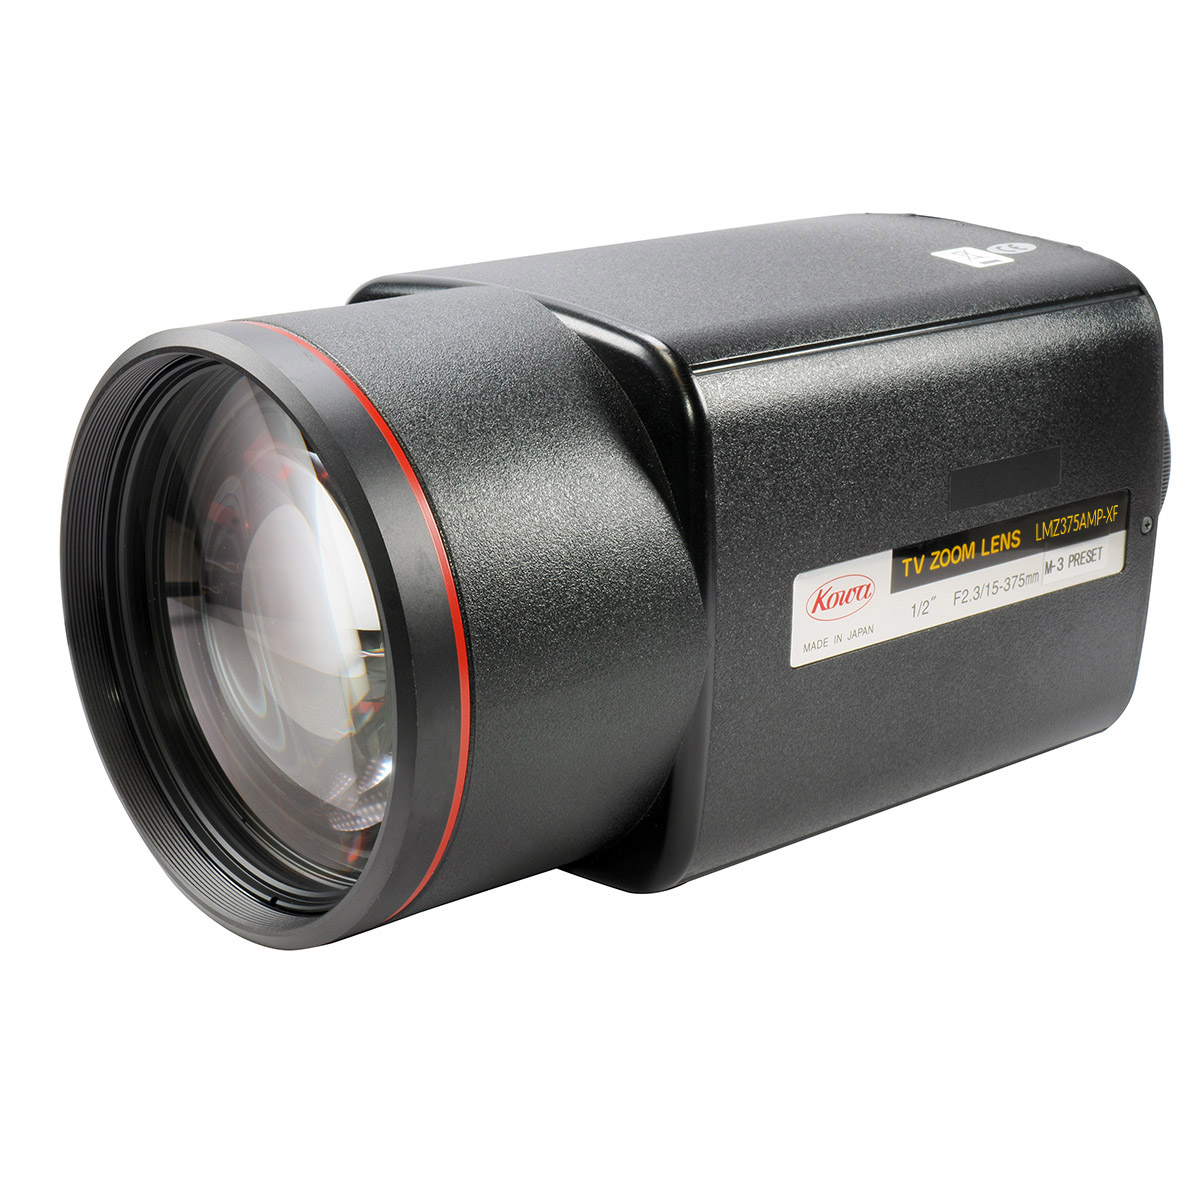 15-375mm, 1/2", Kowa C-Mount Objektiv für CCTV-Anwendungen